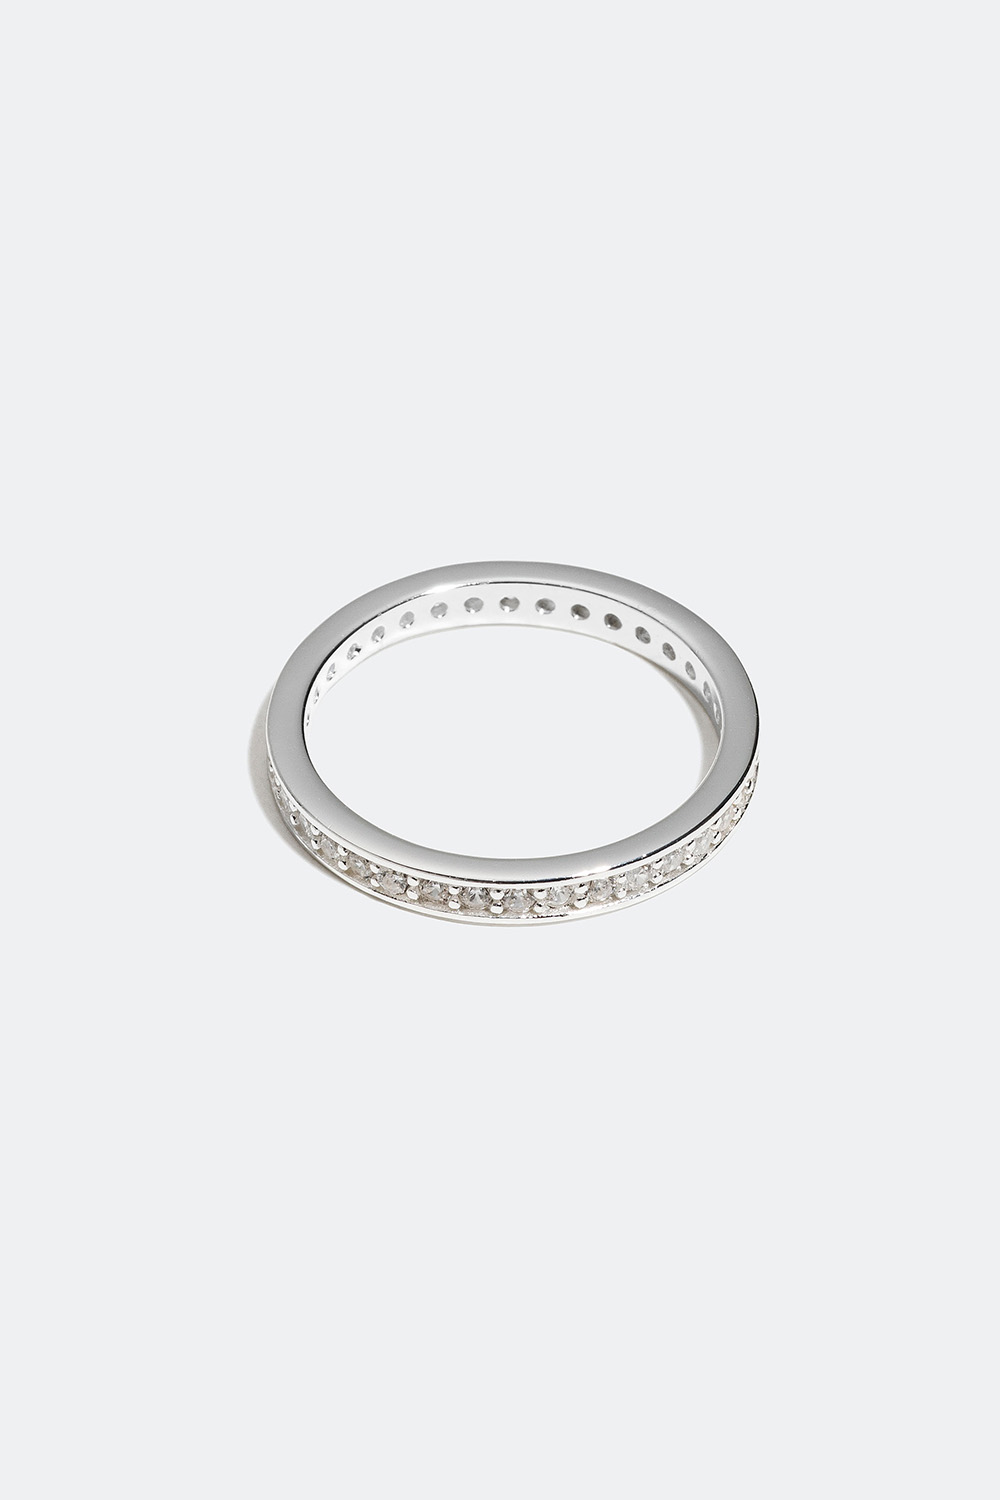 Ring i ekte sølv med hvite zirkonia-stener i gruppen Ekte sølv / Sølvringer / Sølv hos Glitter (556000591)